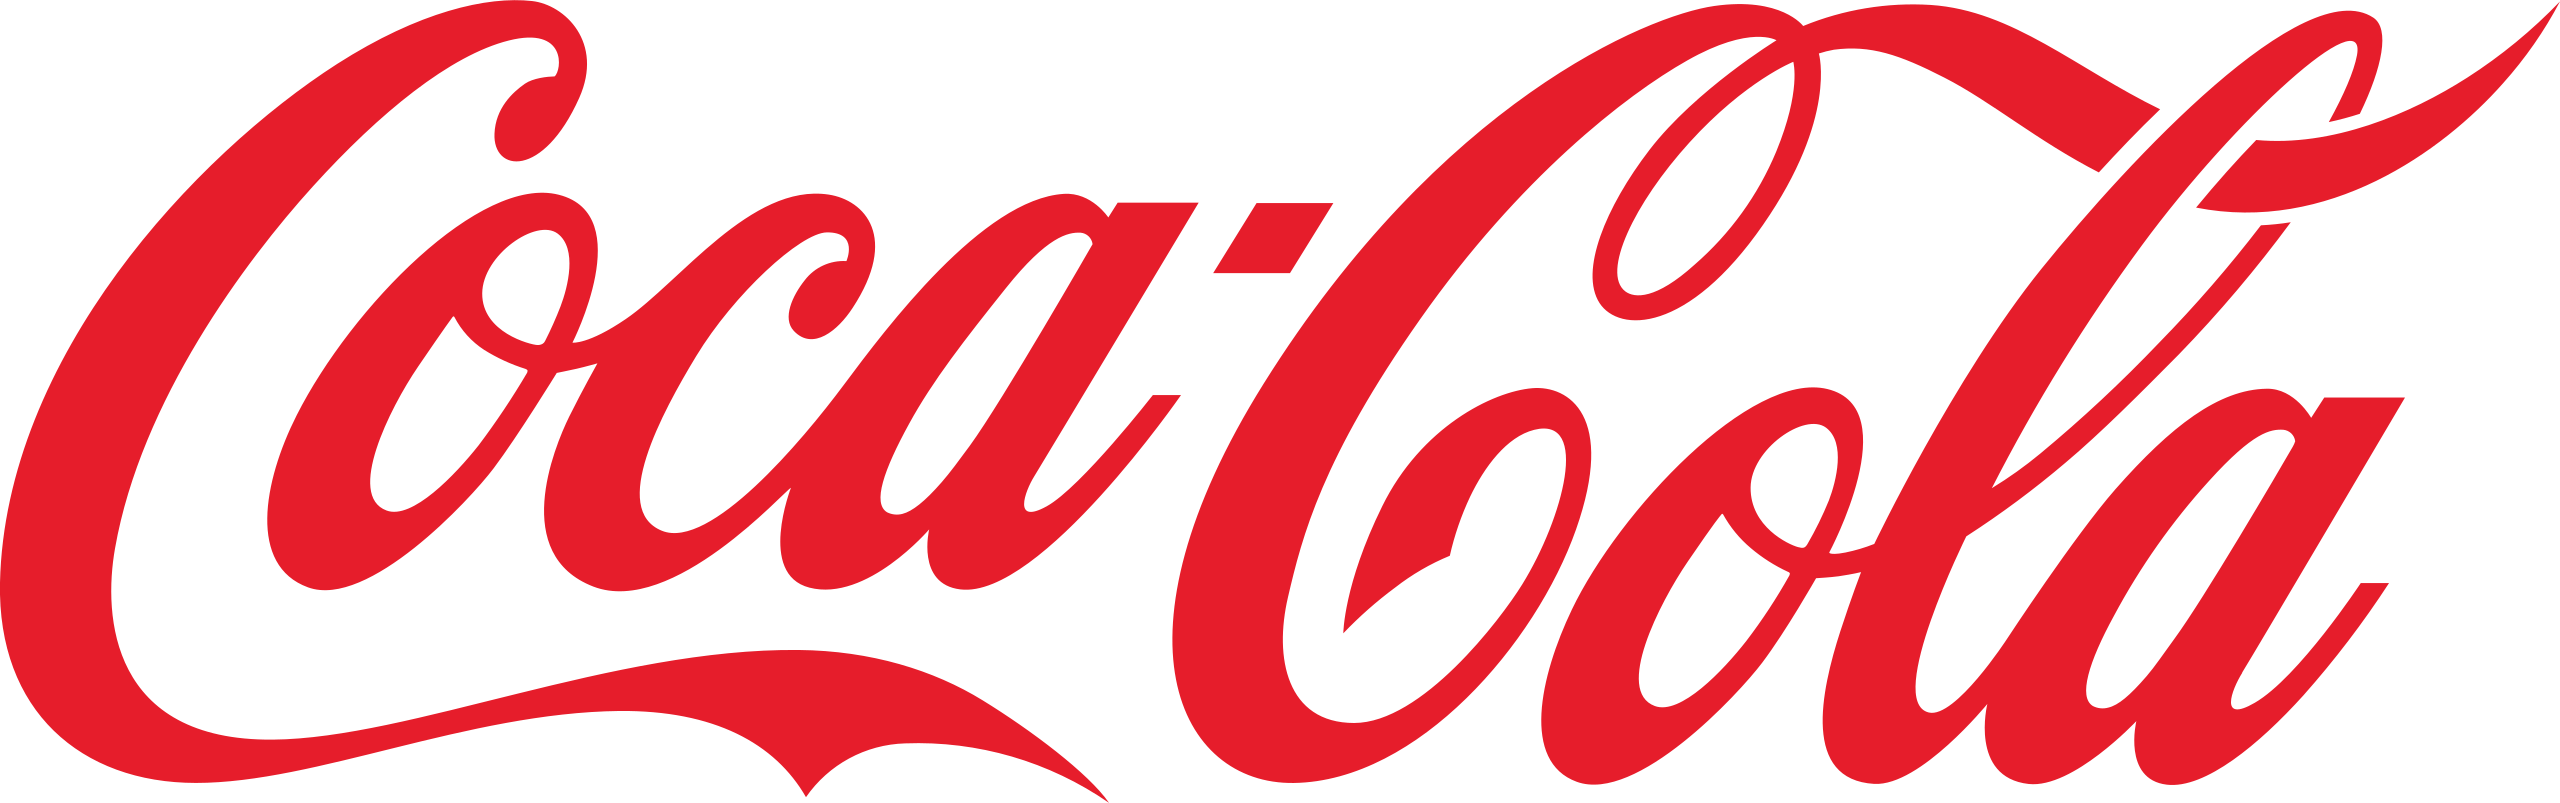 https://www.coca-cola.co.uk/